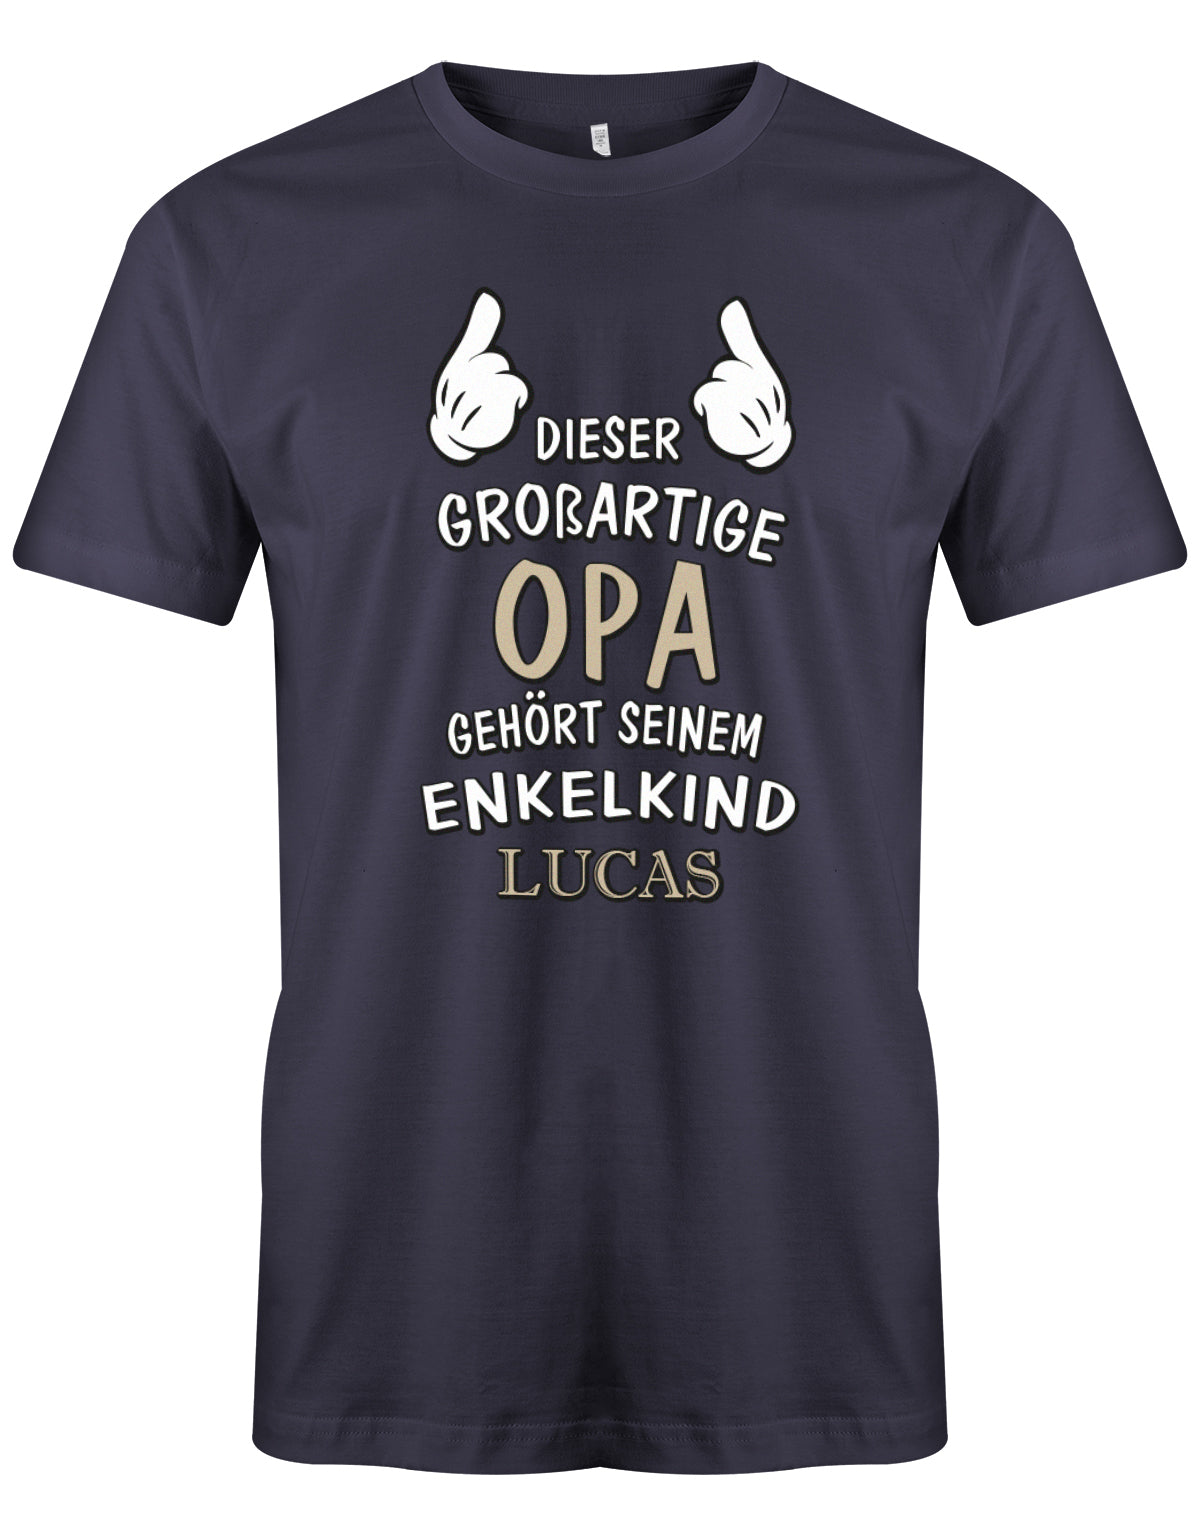 Opa Shirt personalisiert - Dieser großartige Opa gehört seinen Enkelkind. Mit Namen vom Enkelkind. Navy